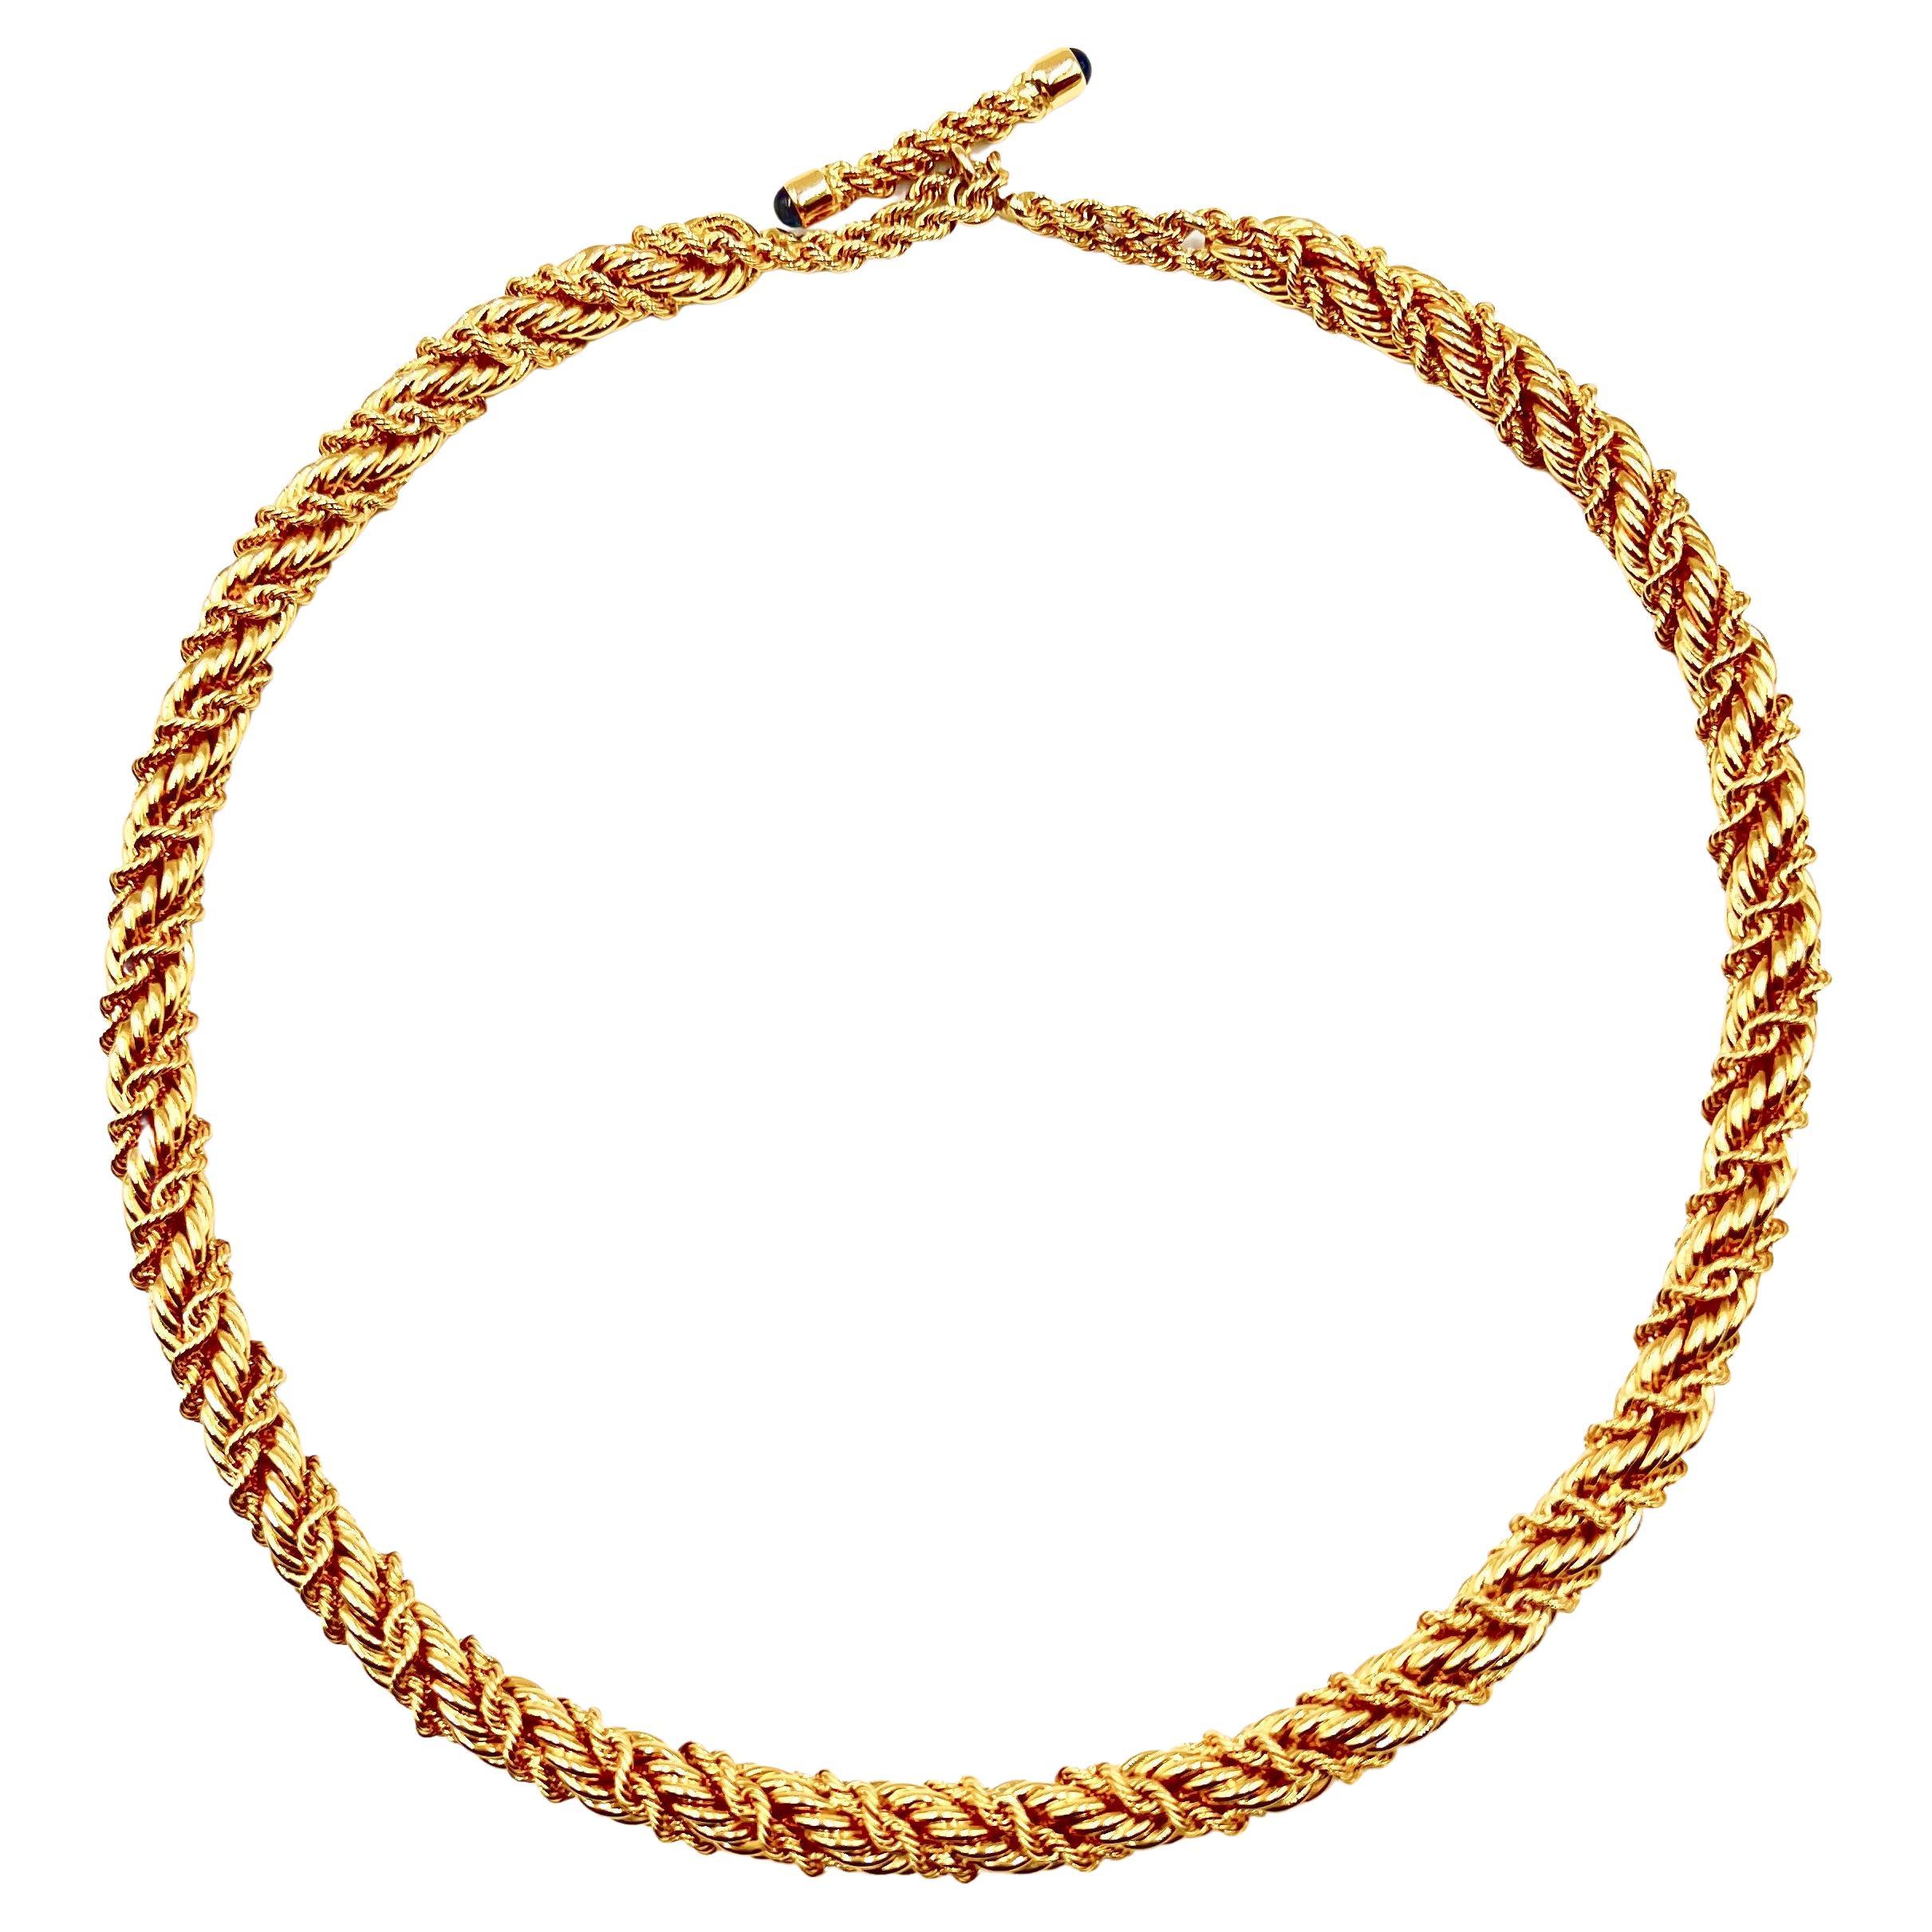 Collier à chaîne torsadée en or jaune 18 carats, conçu par Jean Schlumberger pour Tiffany & Co. Composé d'une grande chaîne en corde polie de 8,50 mm et d'une plus petite chaîne en corde enroulée en diagonale. Fermoir à bascule avec des saphirs